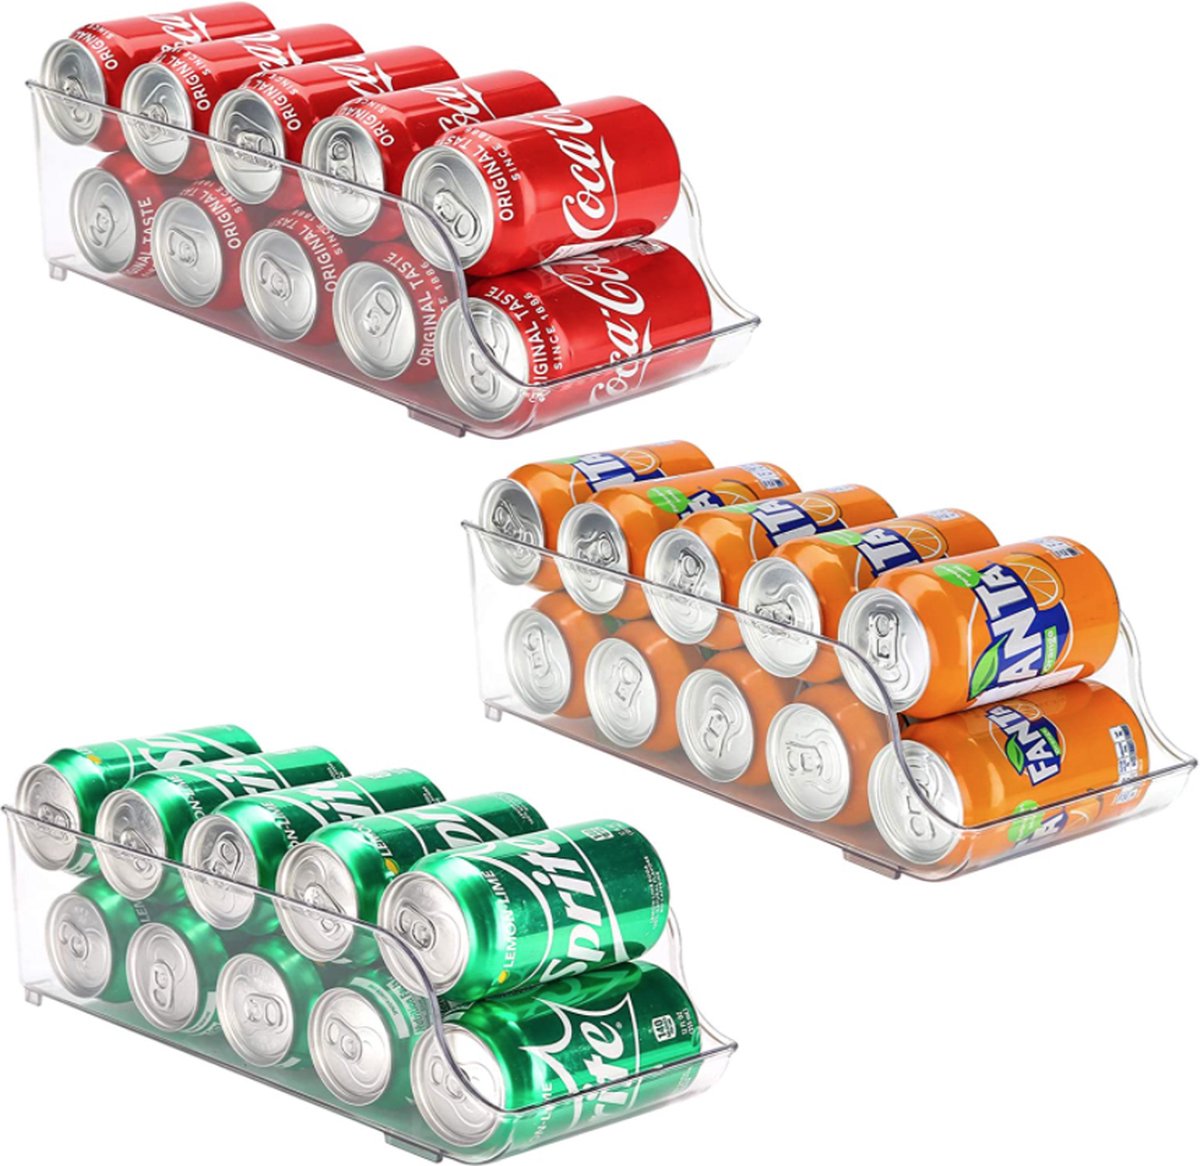 Buxibo - Organisateur/Distributeur de canettes de soda - Rangement